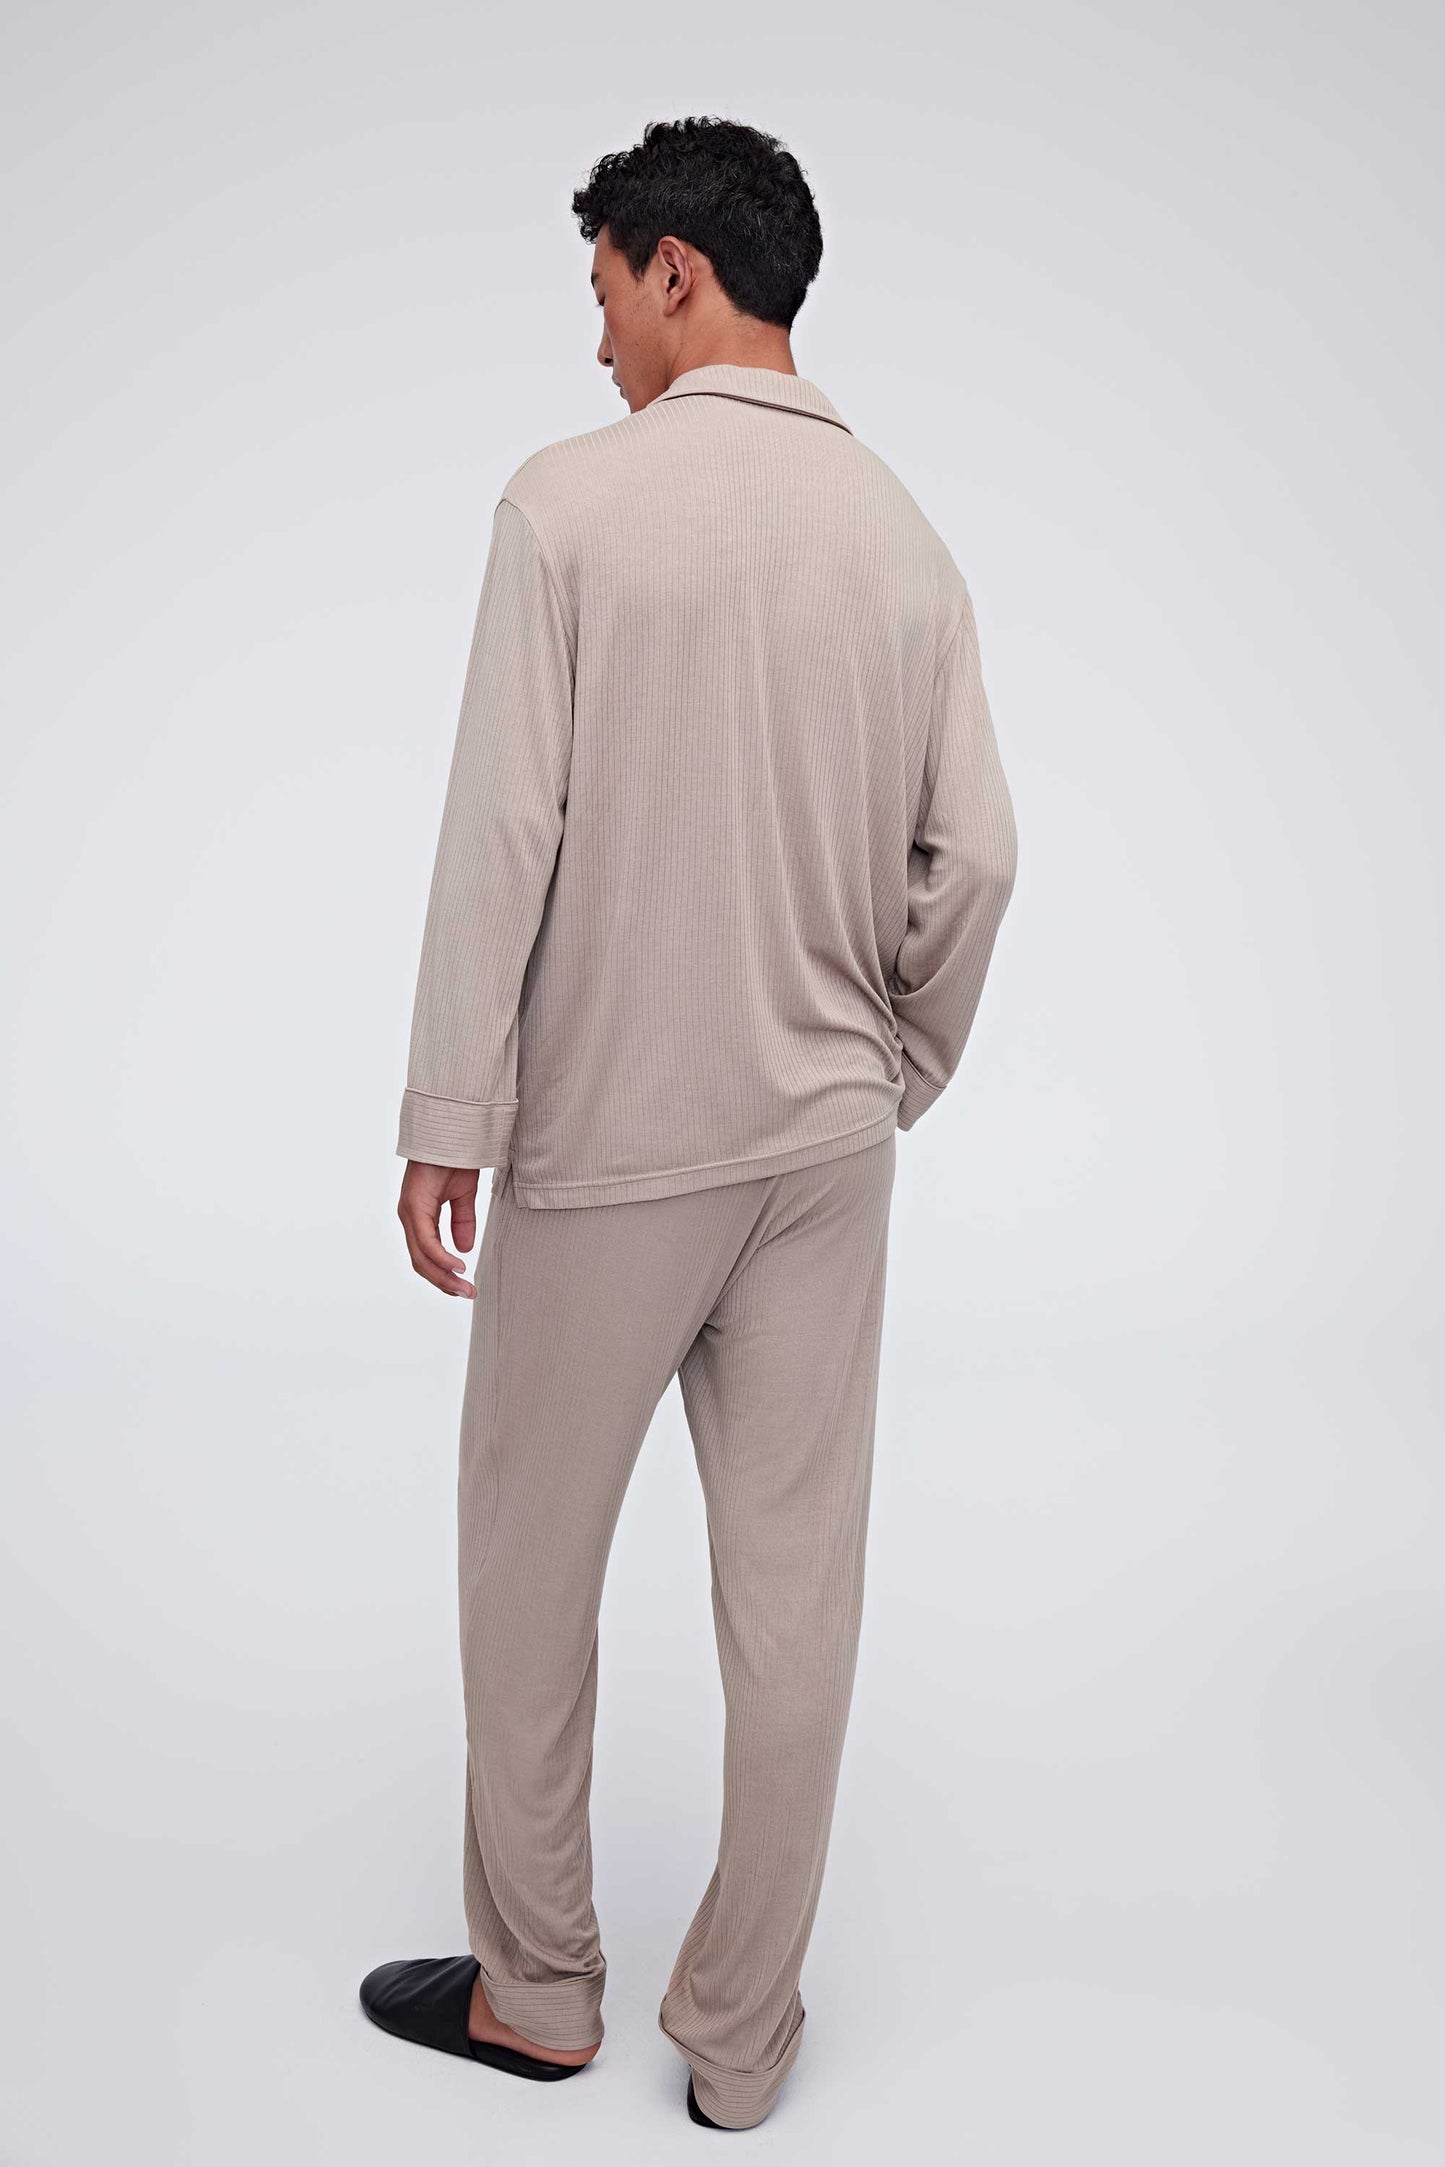 Men's Classic Cozy Pajama Pants